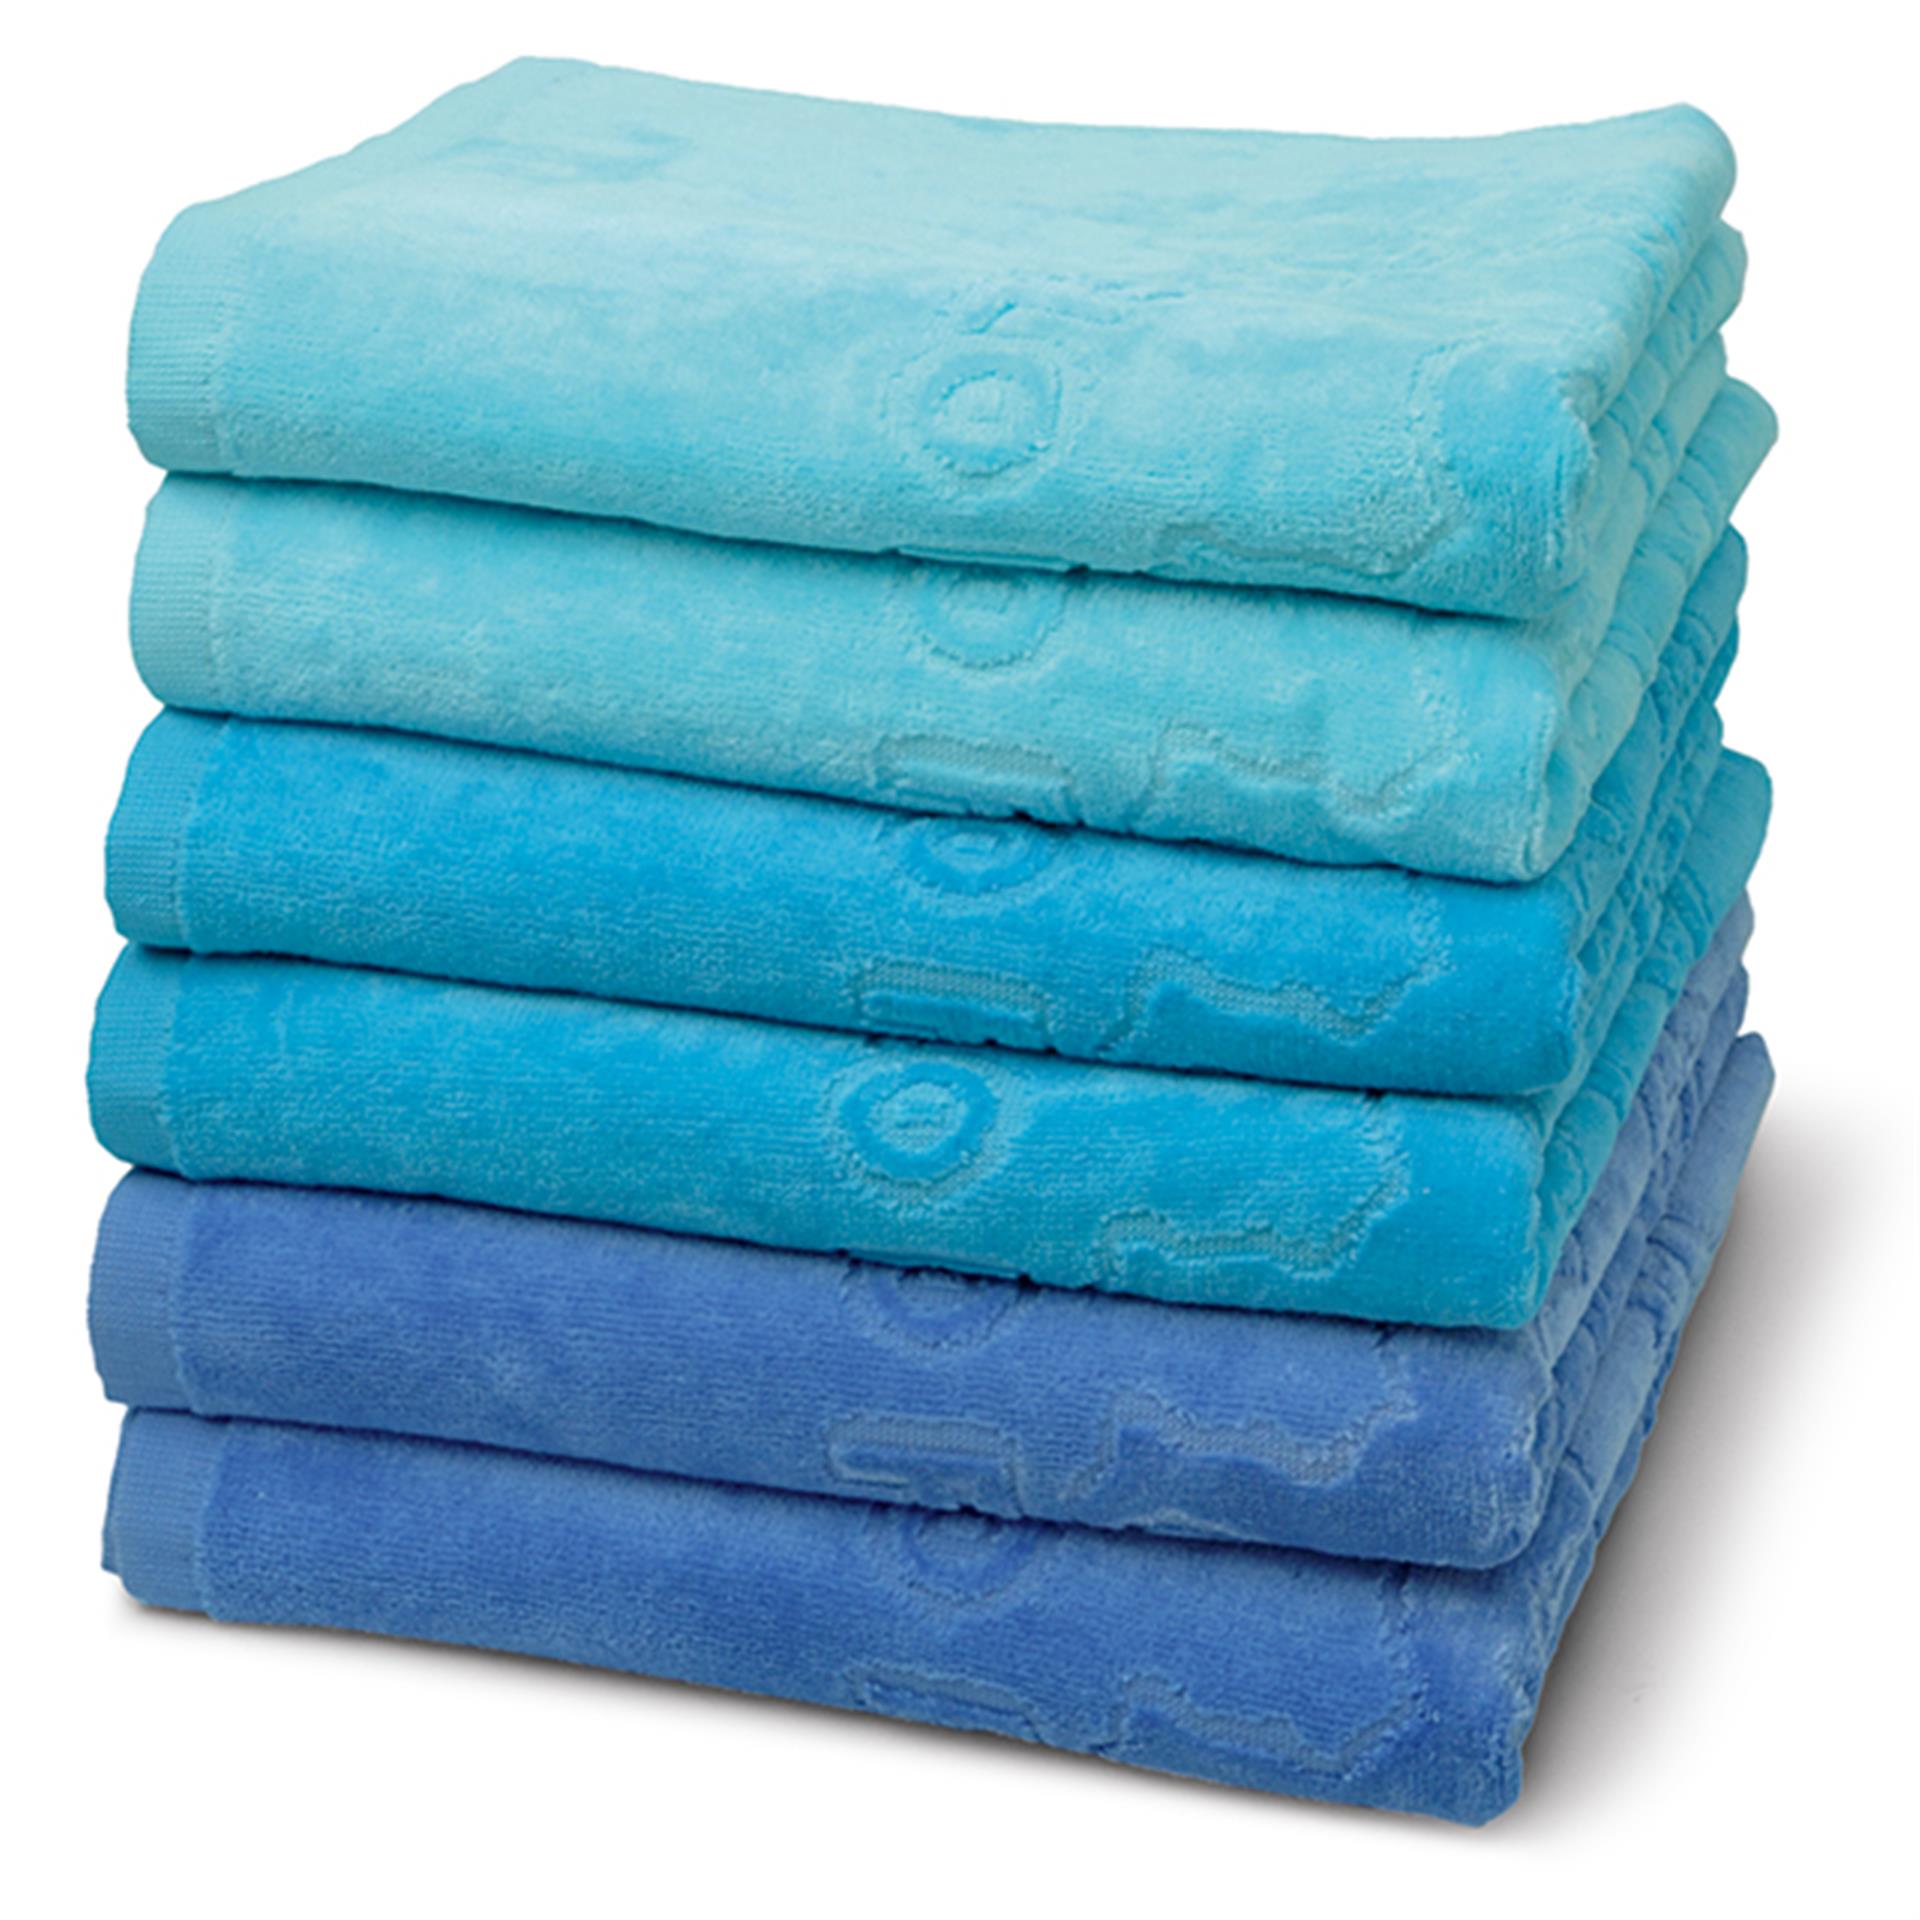 6 asciugamani di spugna, Ocean Blue